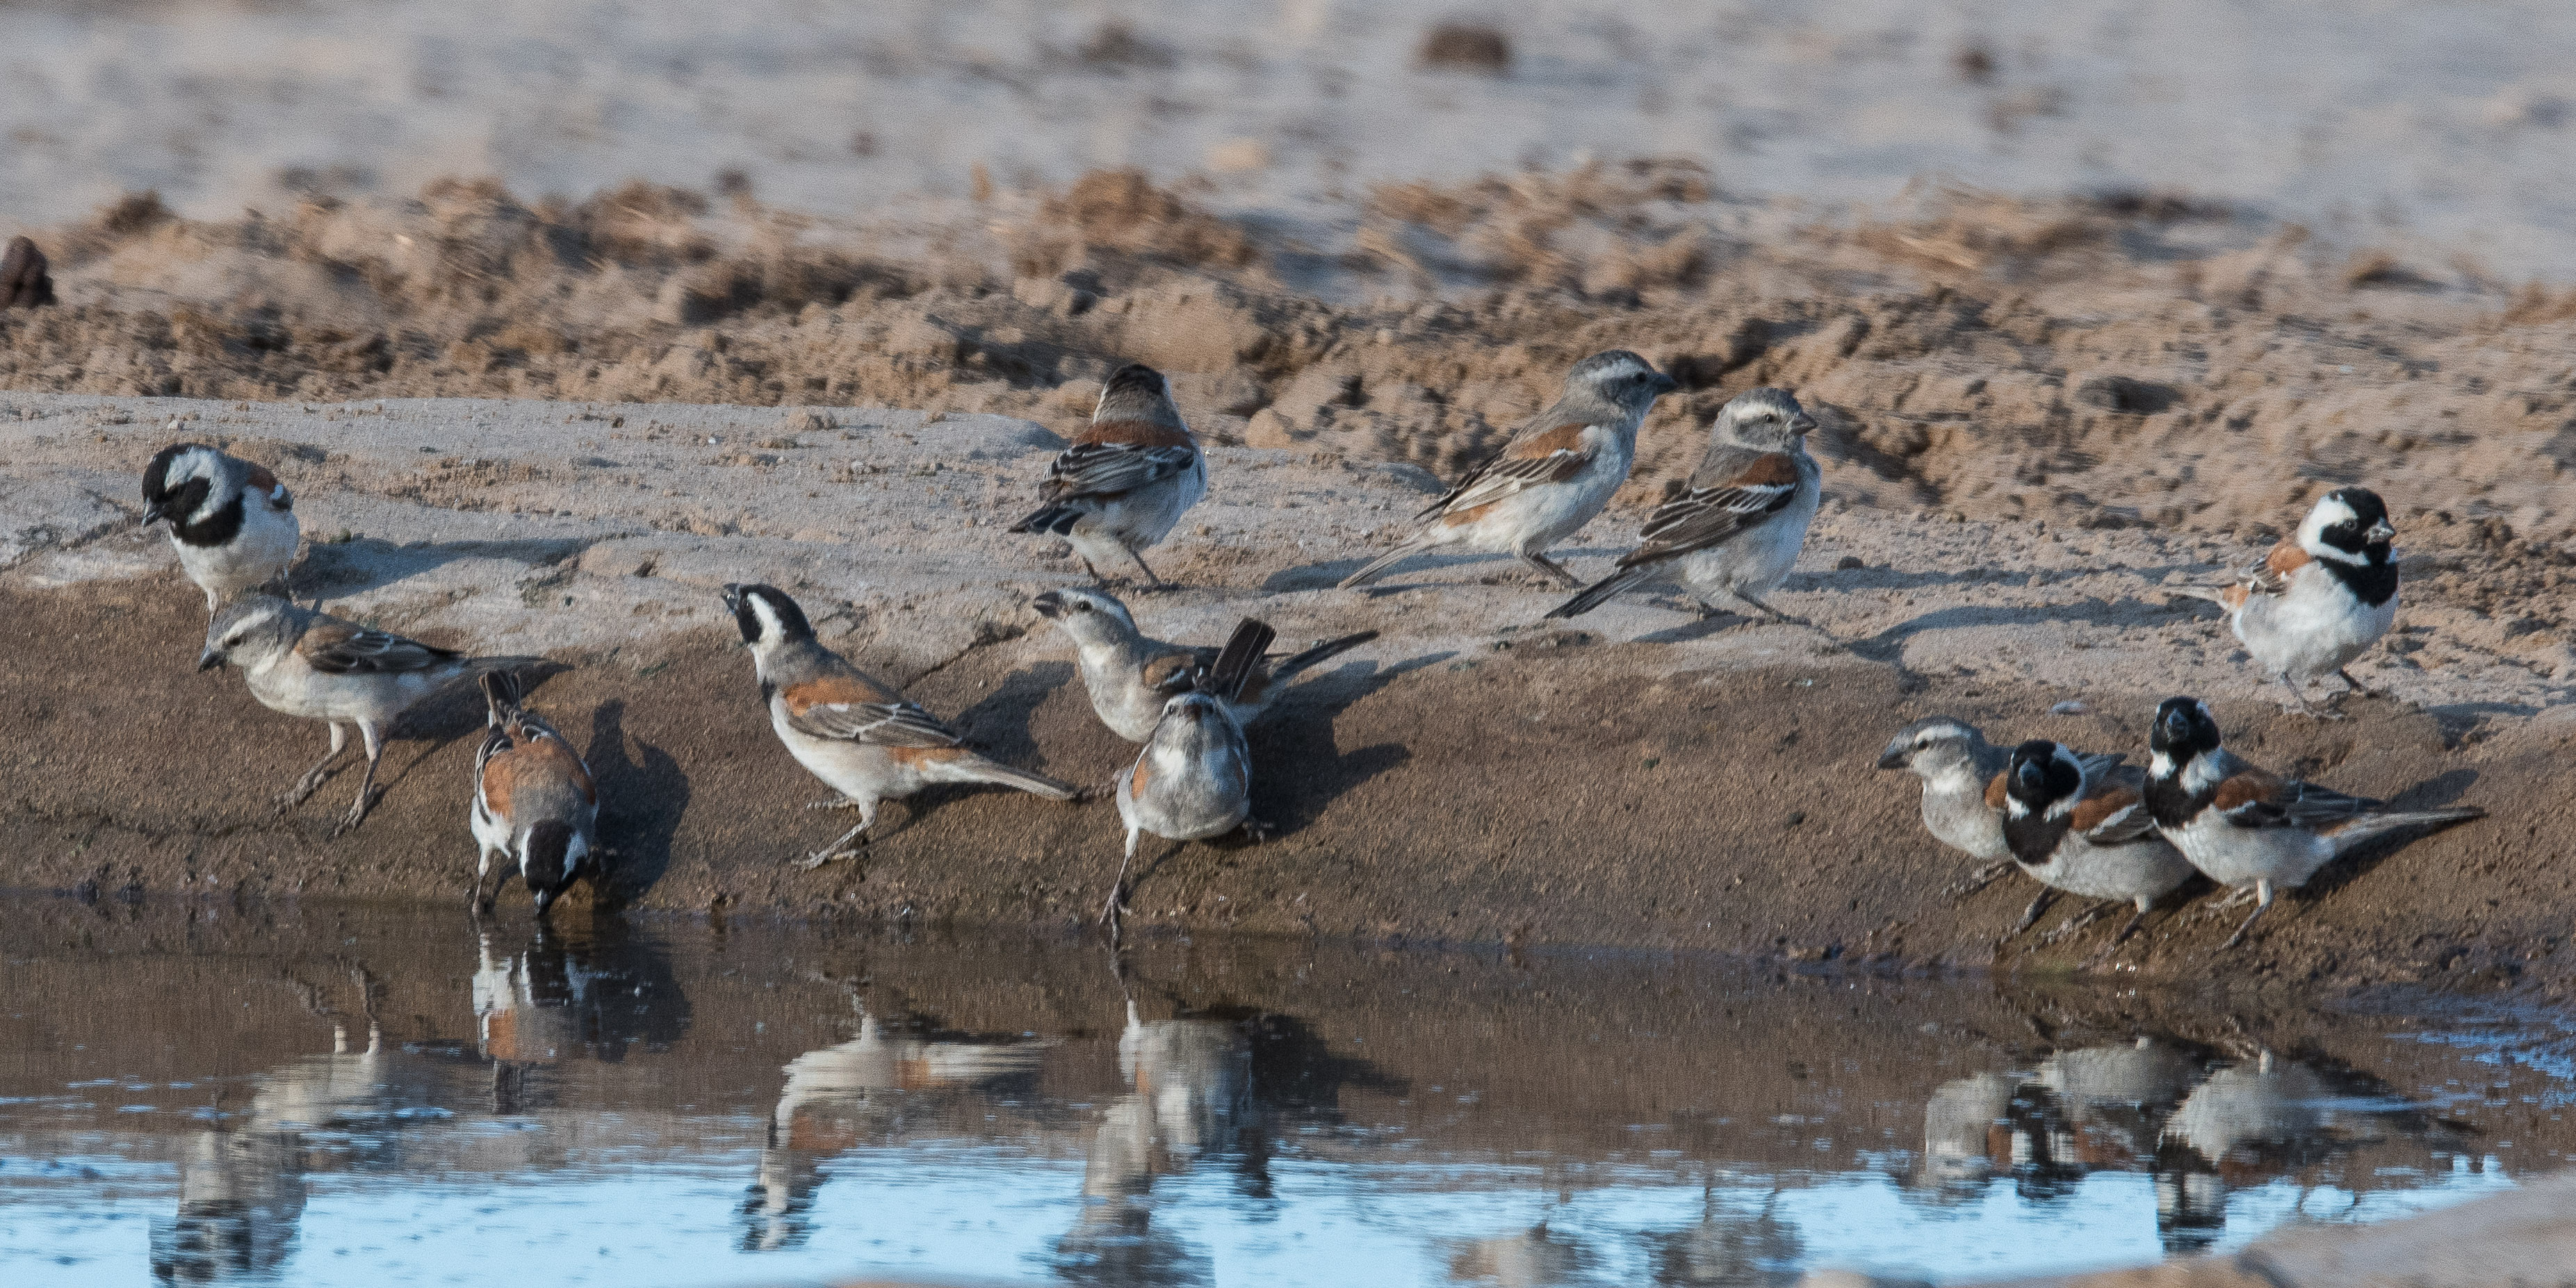 Moineaux mélanure (Cape sparrows, Passer melanurus) mâles et femelles au point d'eau du Hoanib Valley camp, Kunene, Namibie.